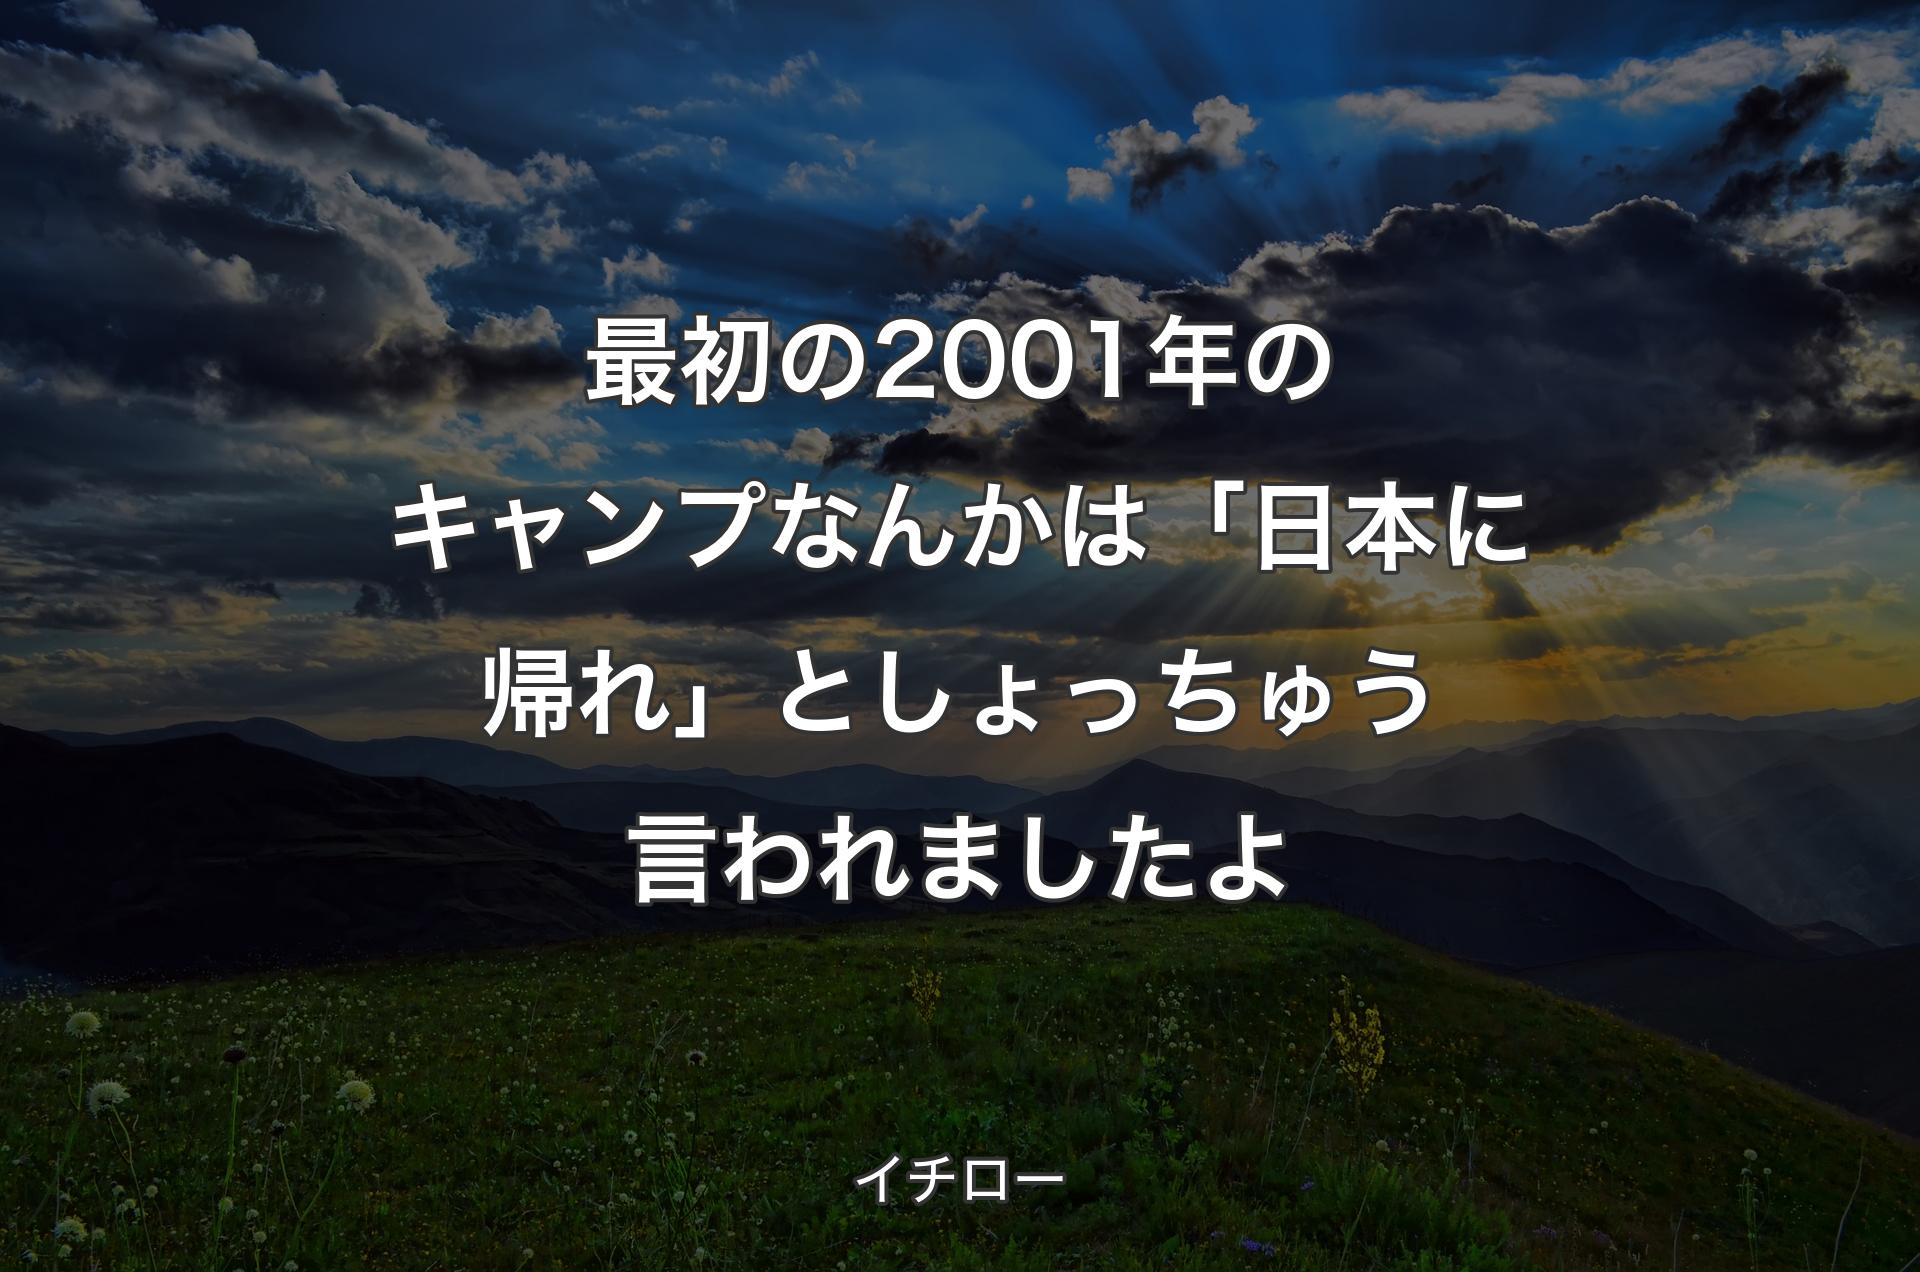 最初の2001年のキャンプなんかは「日本に帰れ」としょっちゅう言われましたよ - イチロー